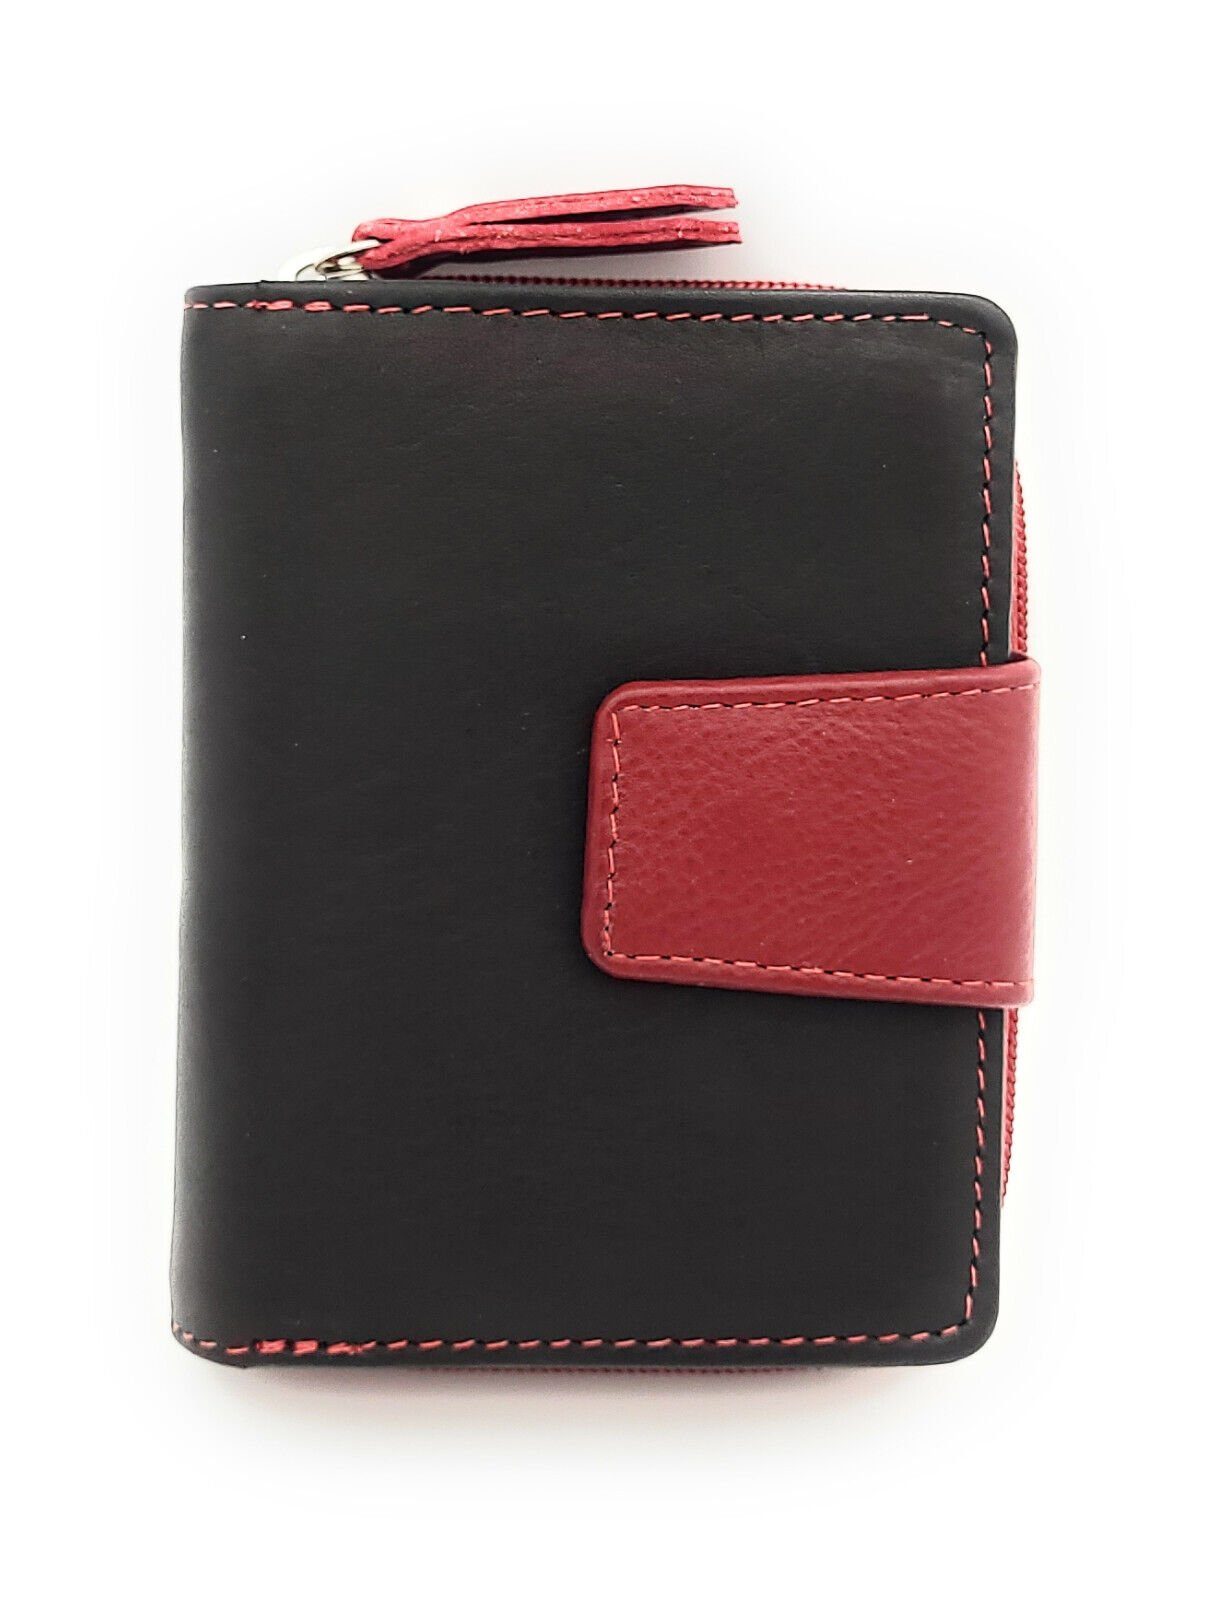 JOCKEY CLUB Mini Geldbörse kleines echt Leder Portemonnaie mit RFID Schutz, Reißverschlussmünzfach, schwarz rot